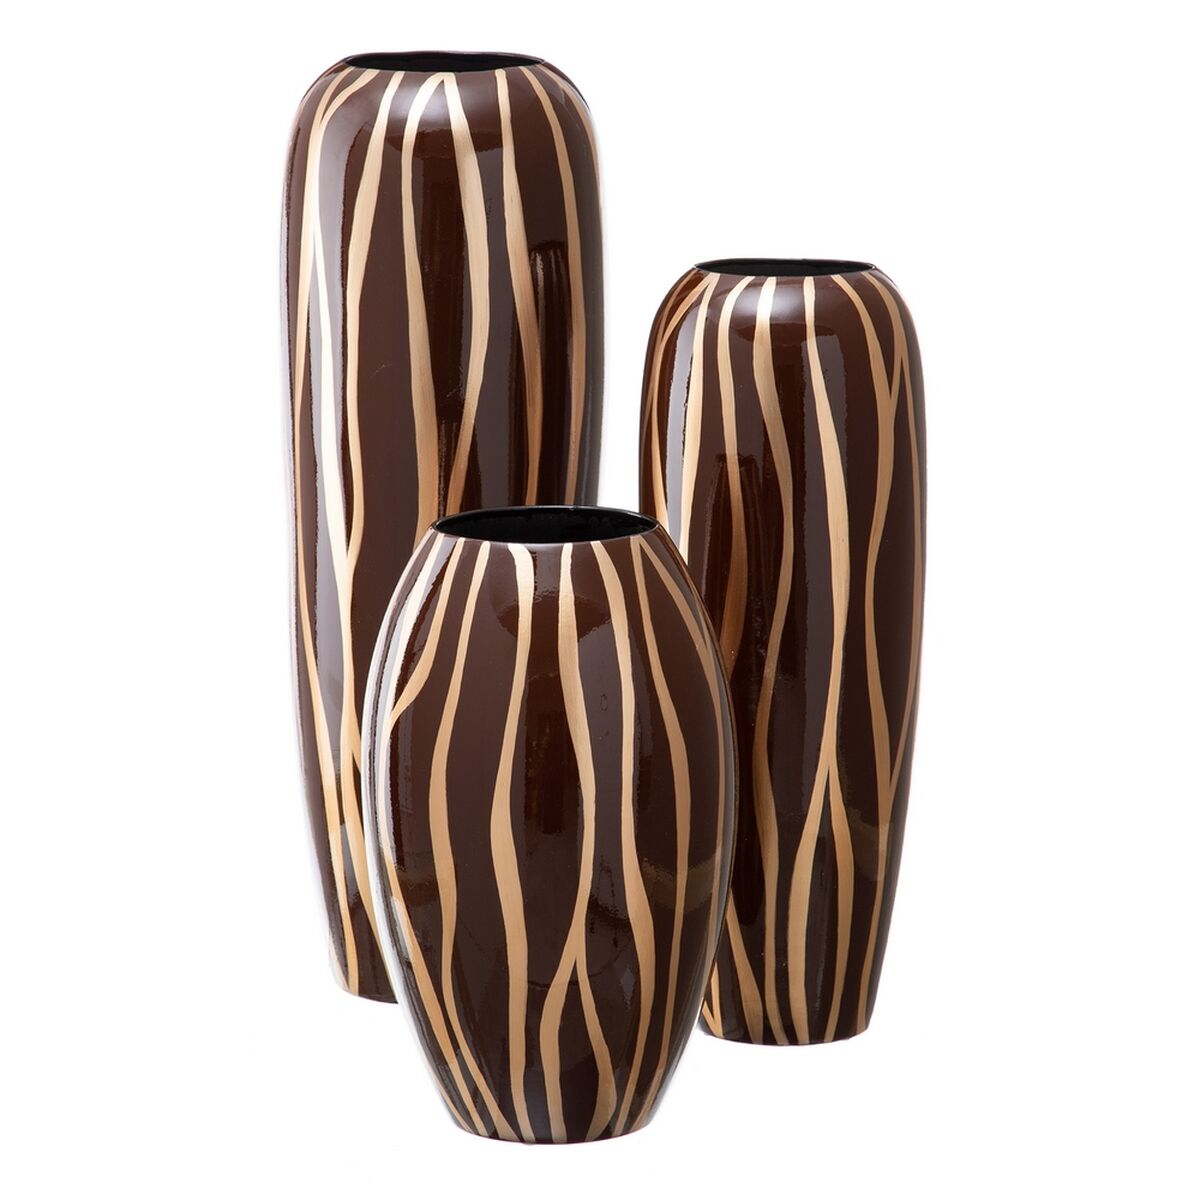 Vase Zebra Ceramic Golden Brown 18 x 18 x 48 cm